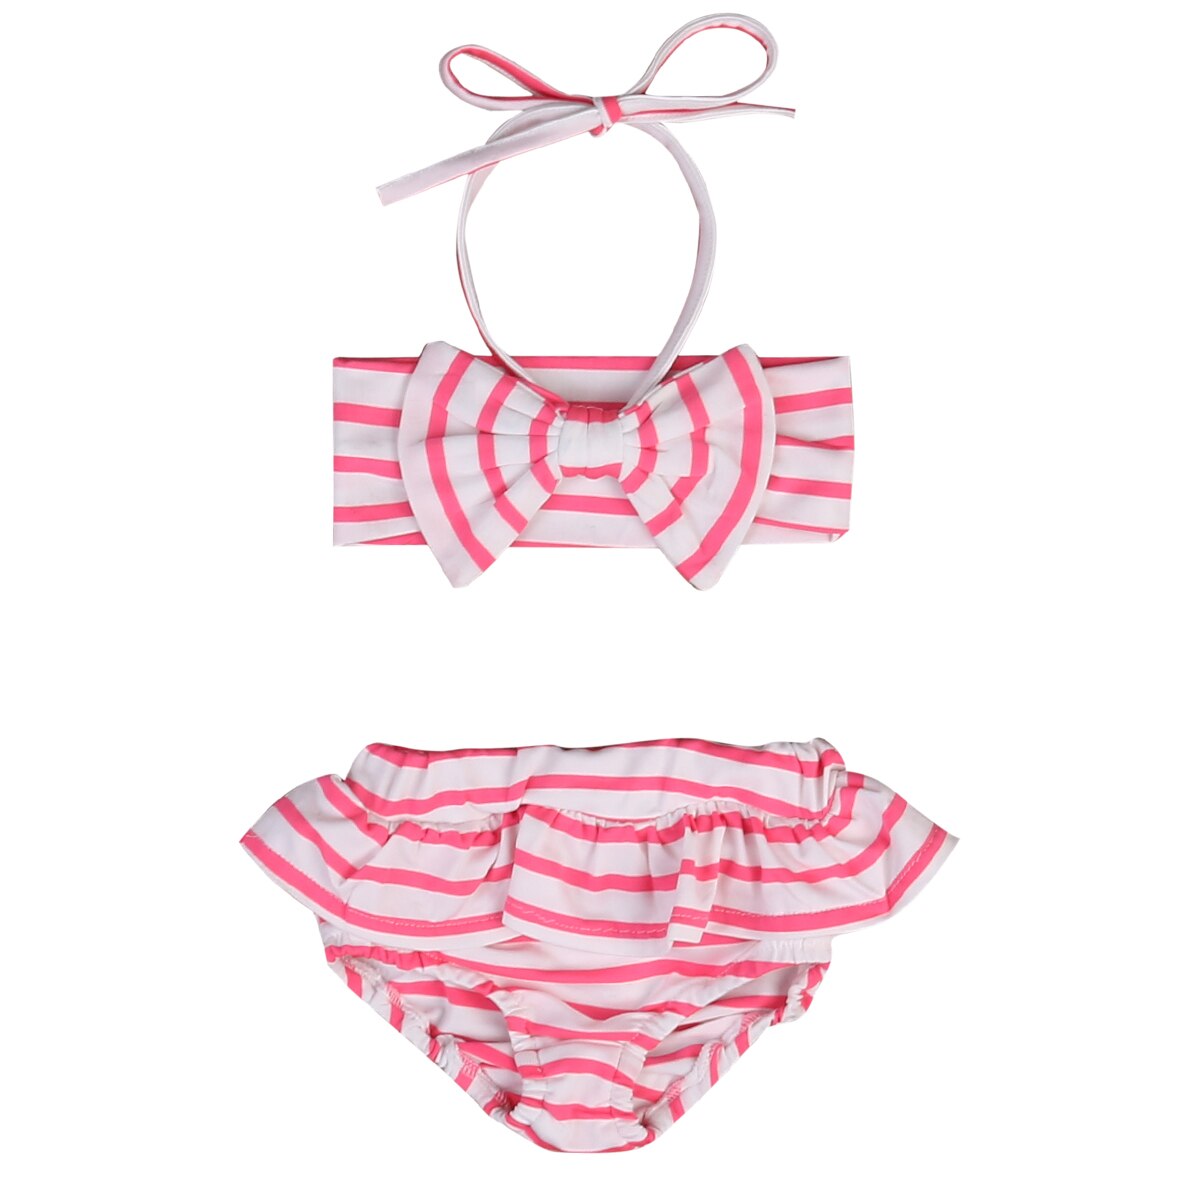 Baby piger badedragt sød kid toddler pige lyserød stribet badetøj badedragt badedragt bikini tankini sæt strandtøj